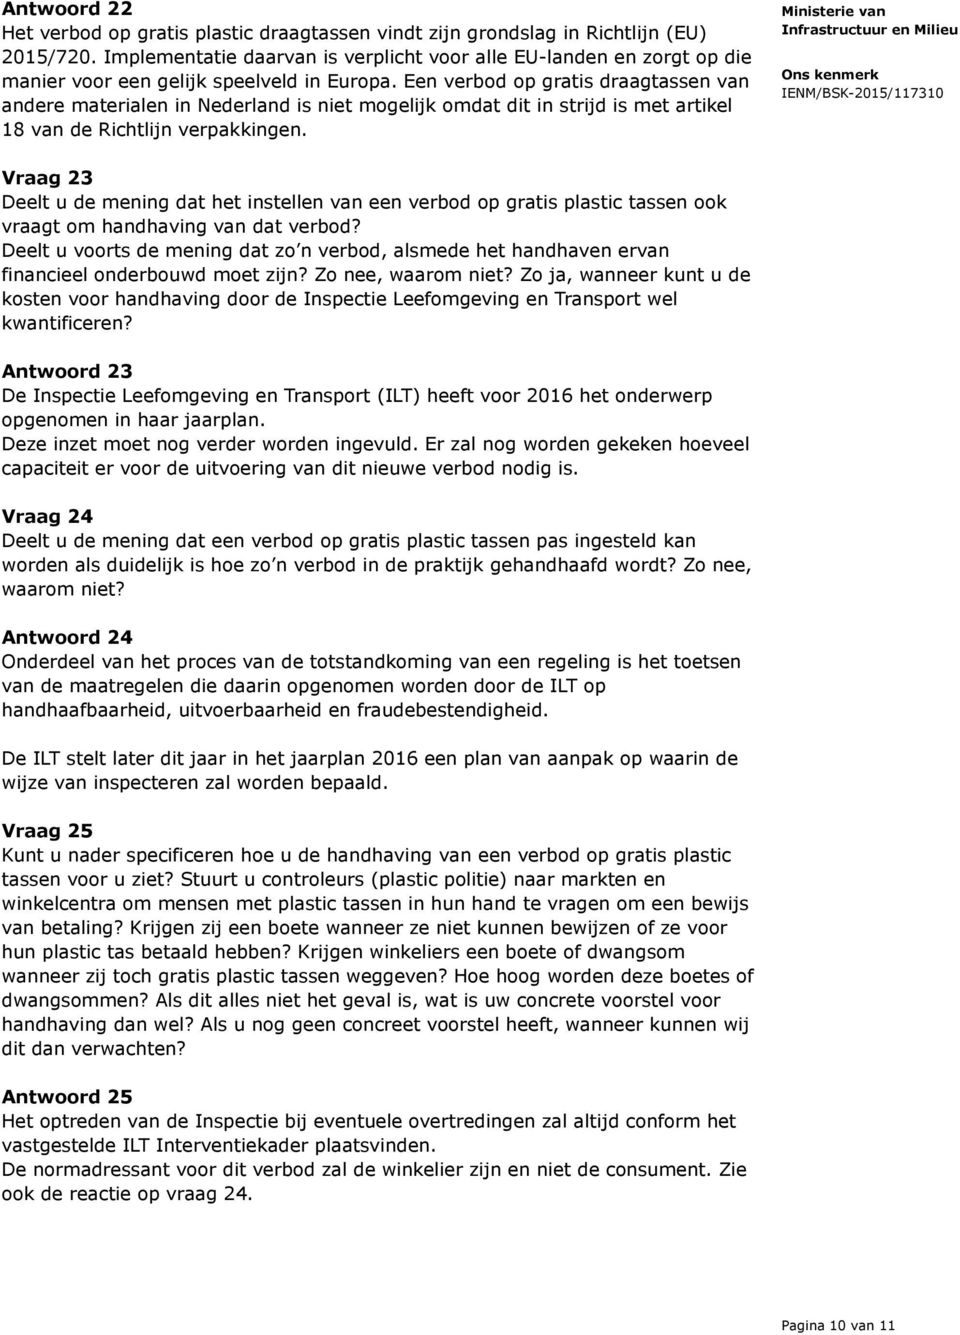 Een verbod op gratis draagtassen van andere materialen in Nederland is niet mogelijk omdat dit in strijd is met artikel 18 van de Richtlijn verpakkingen.